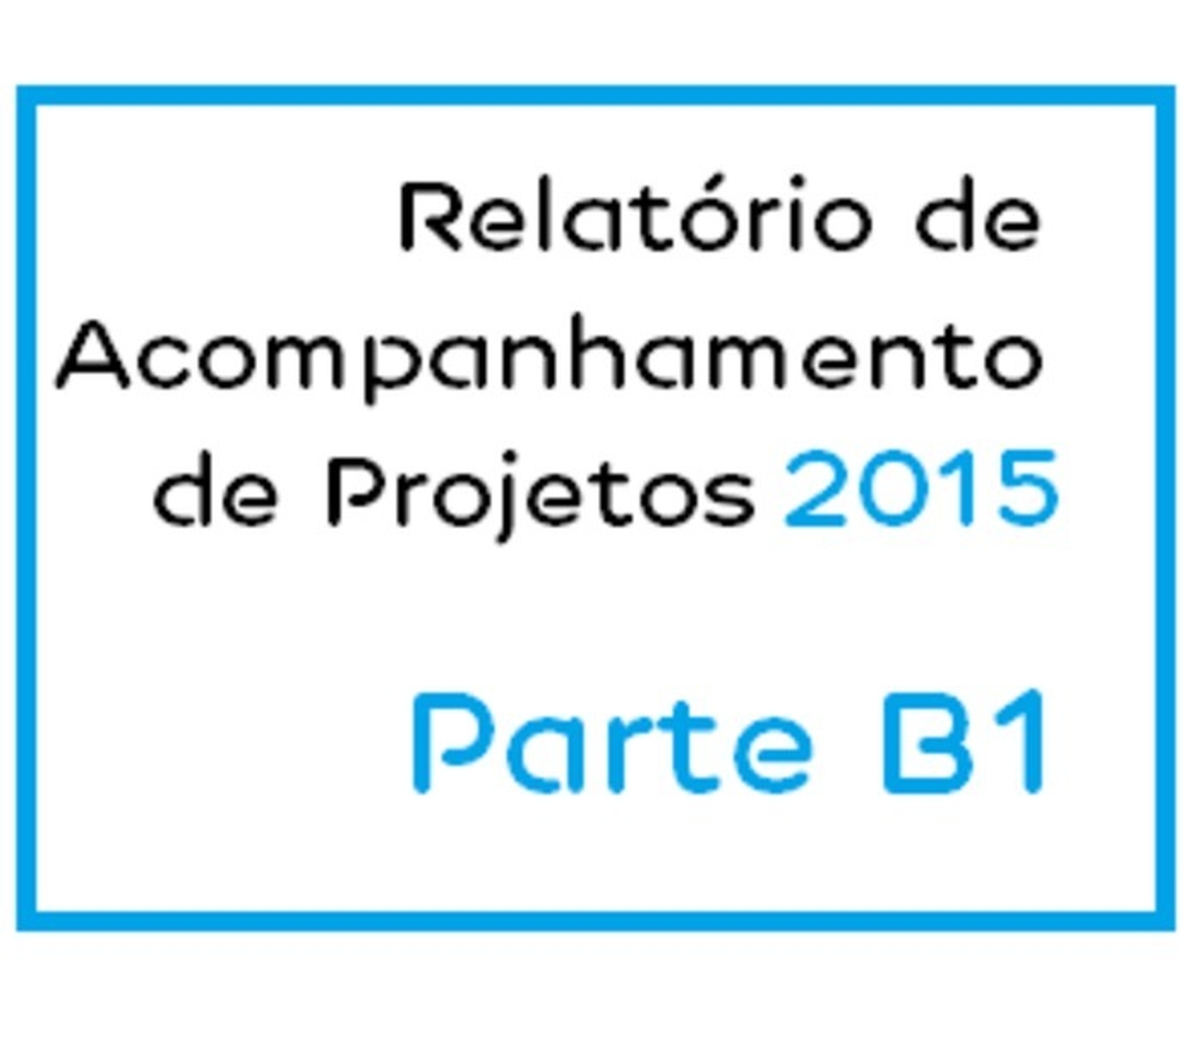 Parte B1 - Relatório de Acompanhamento de Projetos 2015